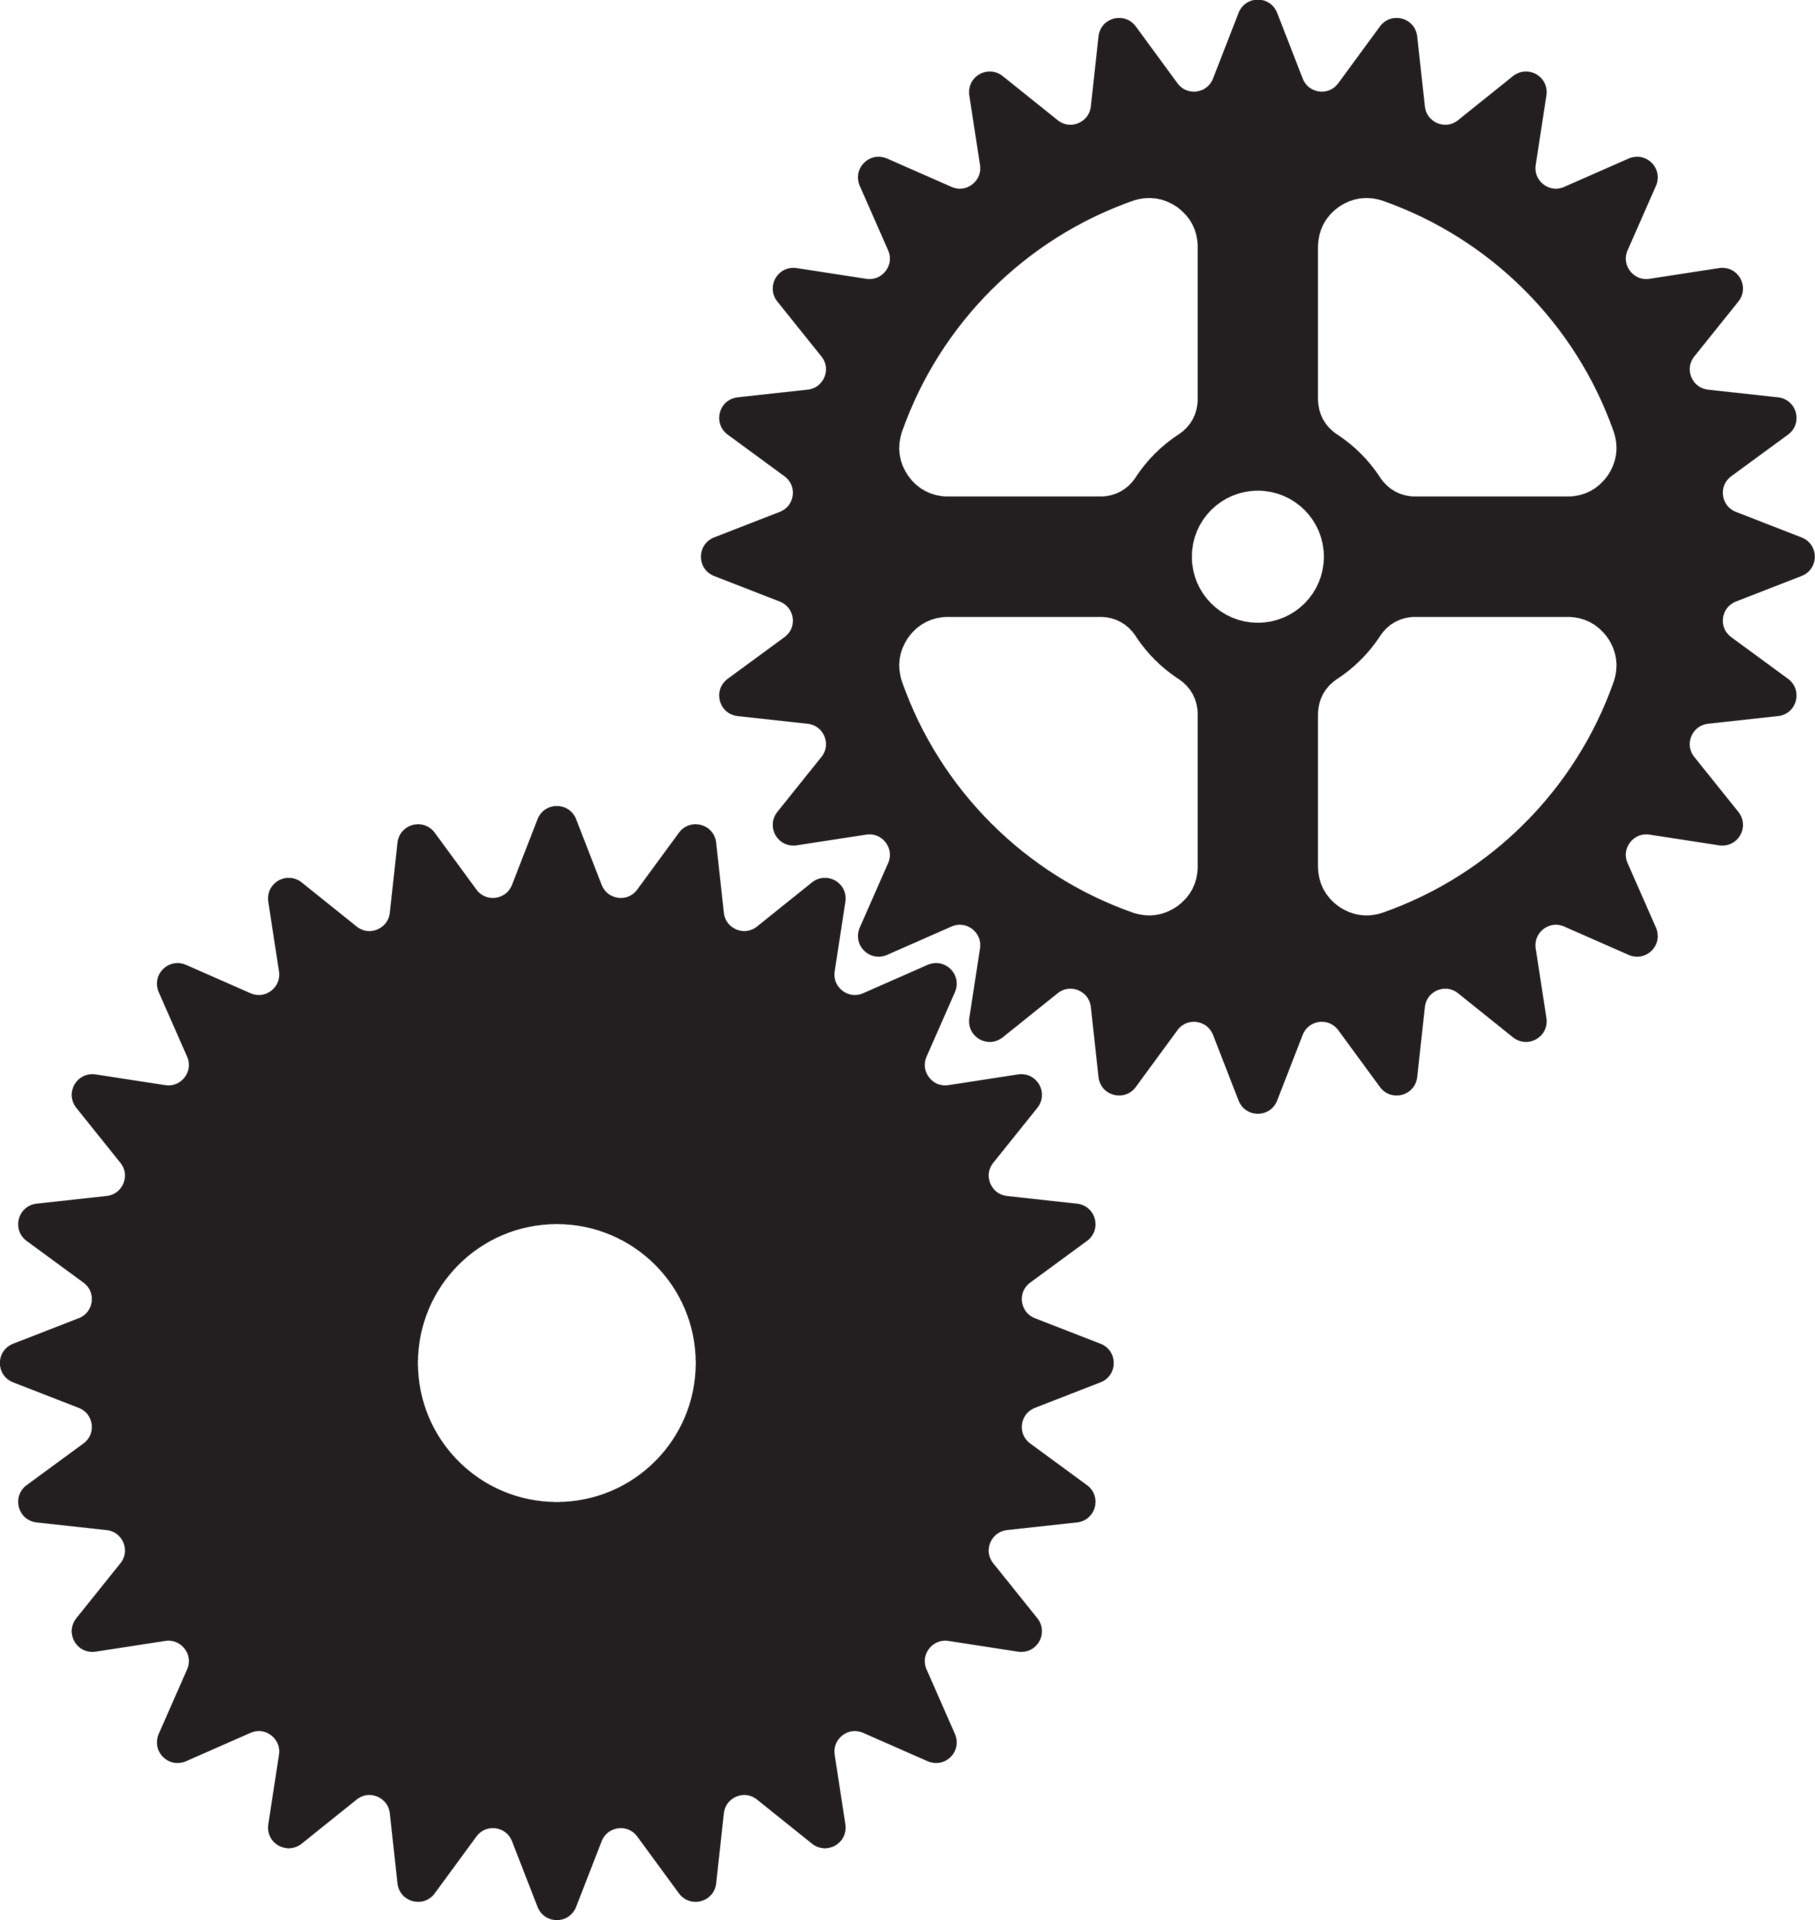 Nahtlose Muster silhouette Zahnräder mechanische Maschine Teile Uhr Zahnrad.  Design für Scrapbooking, Visitenkarten, Hintergrund für das Handwerk  Stock-Vektorgrafik - Alamy